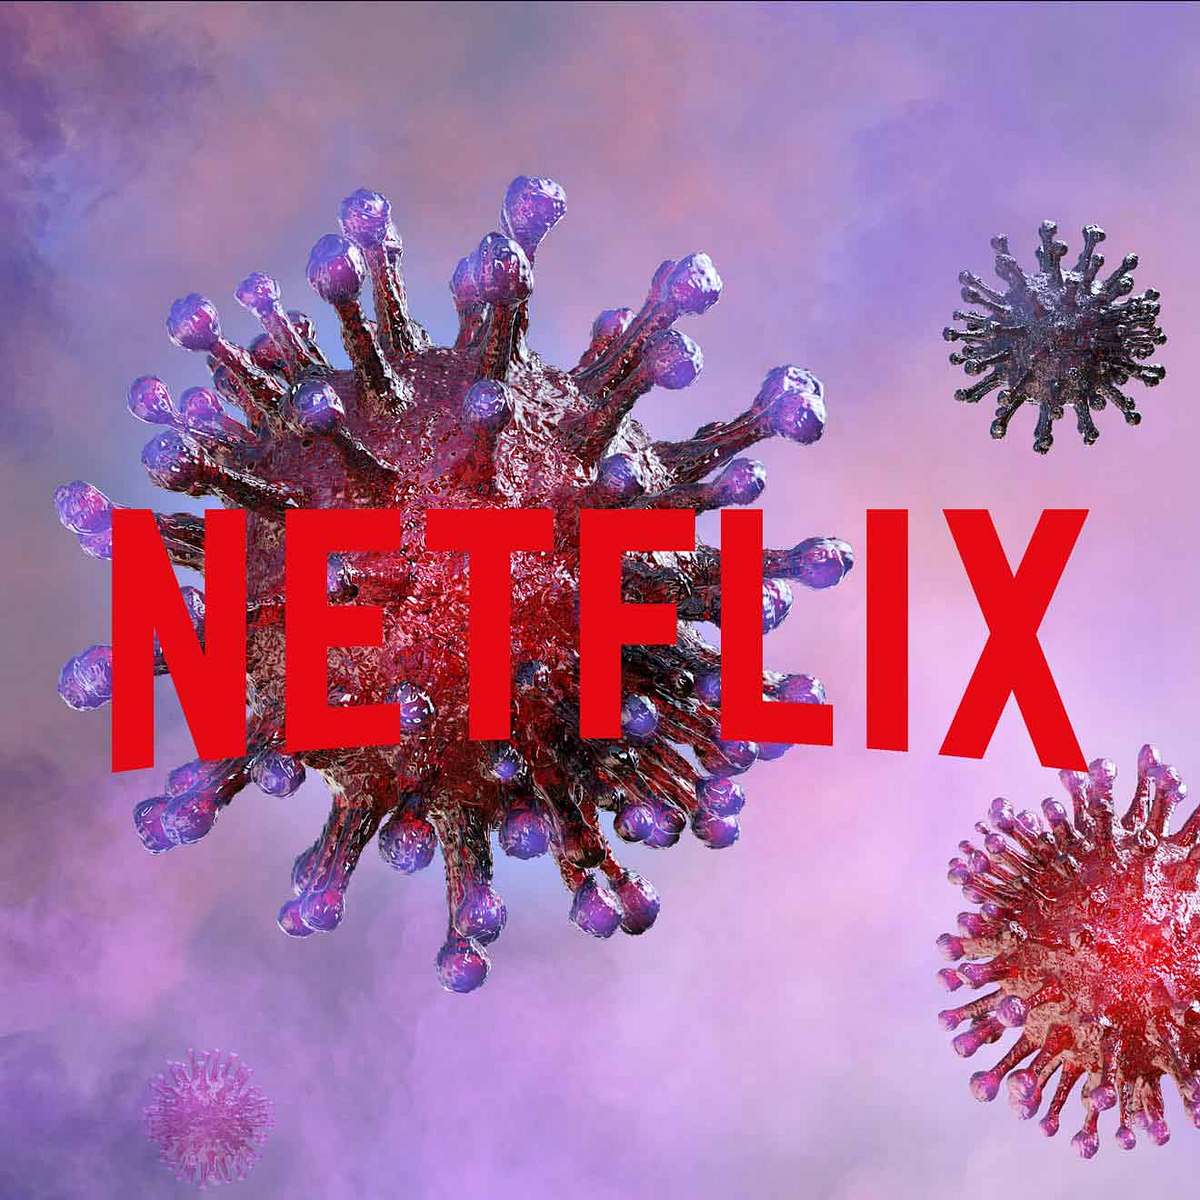 Corona-Krise: Werden wir künftig nicht mal mehr unsere Lieblingsserien auf Netflix streamen können?